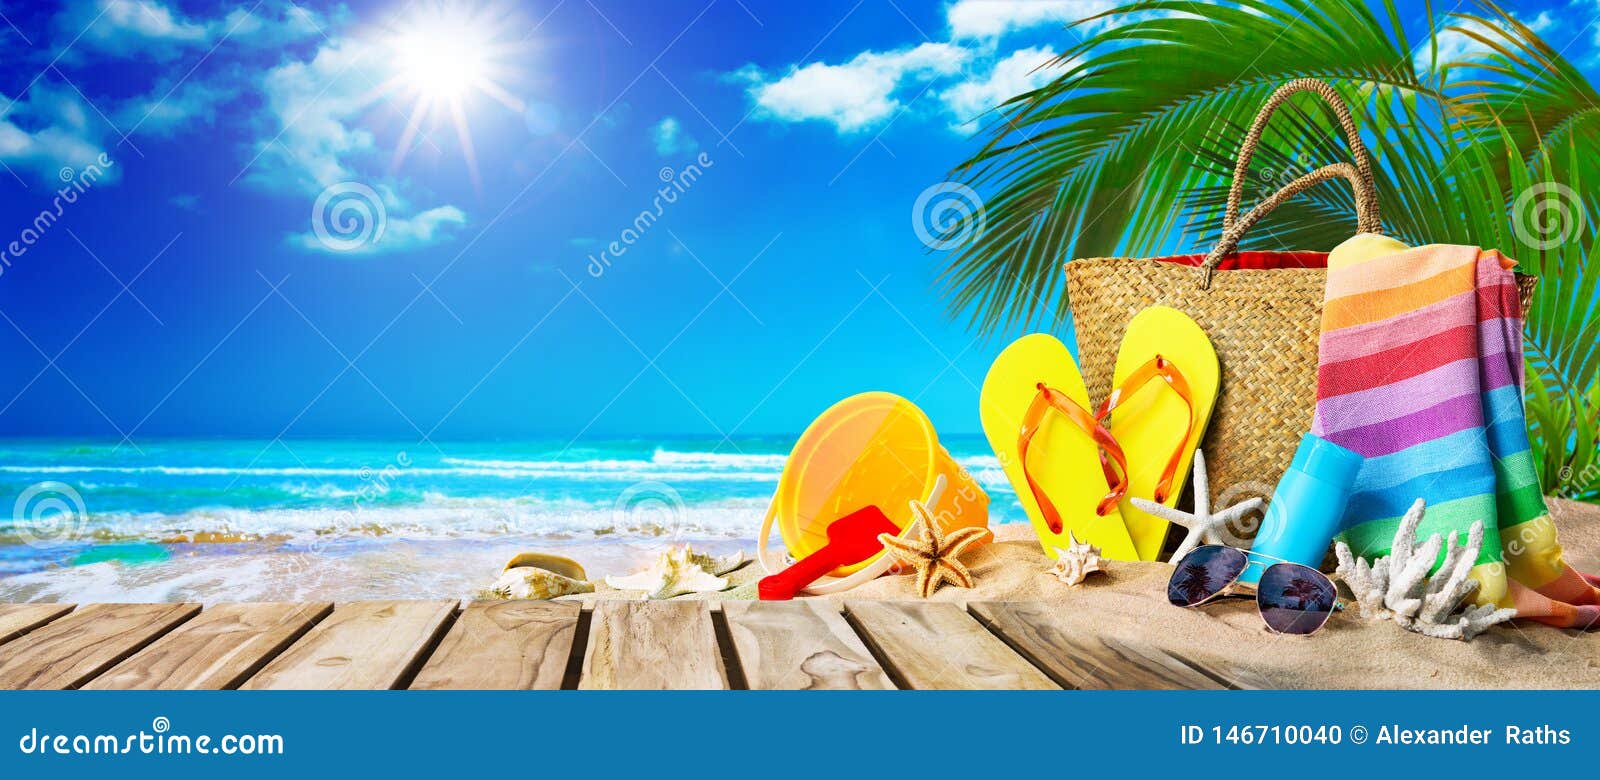 Plage Tropicale Avec Prendre Un Bain De Soleil Des Accessoires, Fond De  Vacances D'?t? Photo stock - Image du ressource, océan: 146710040